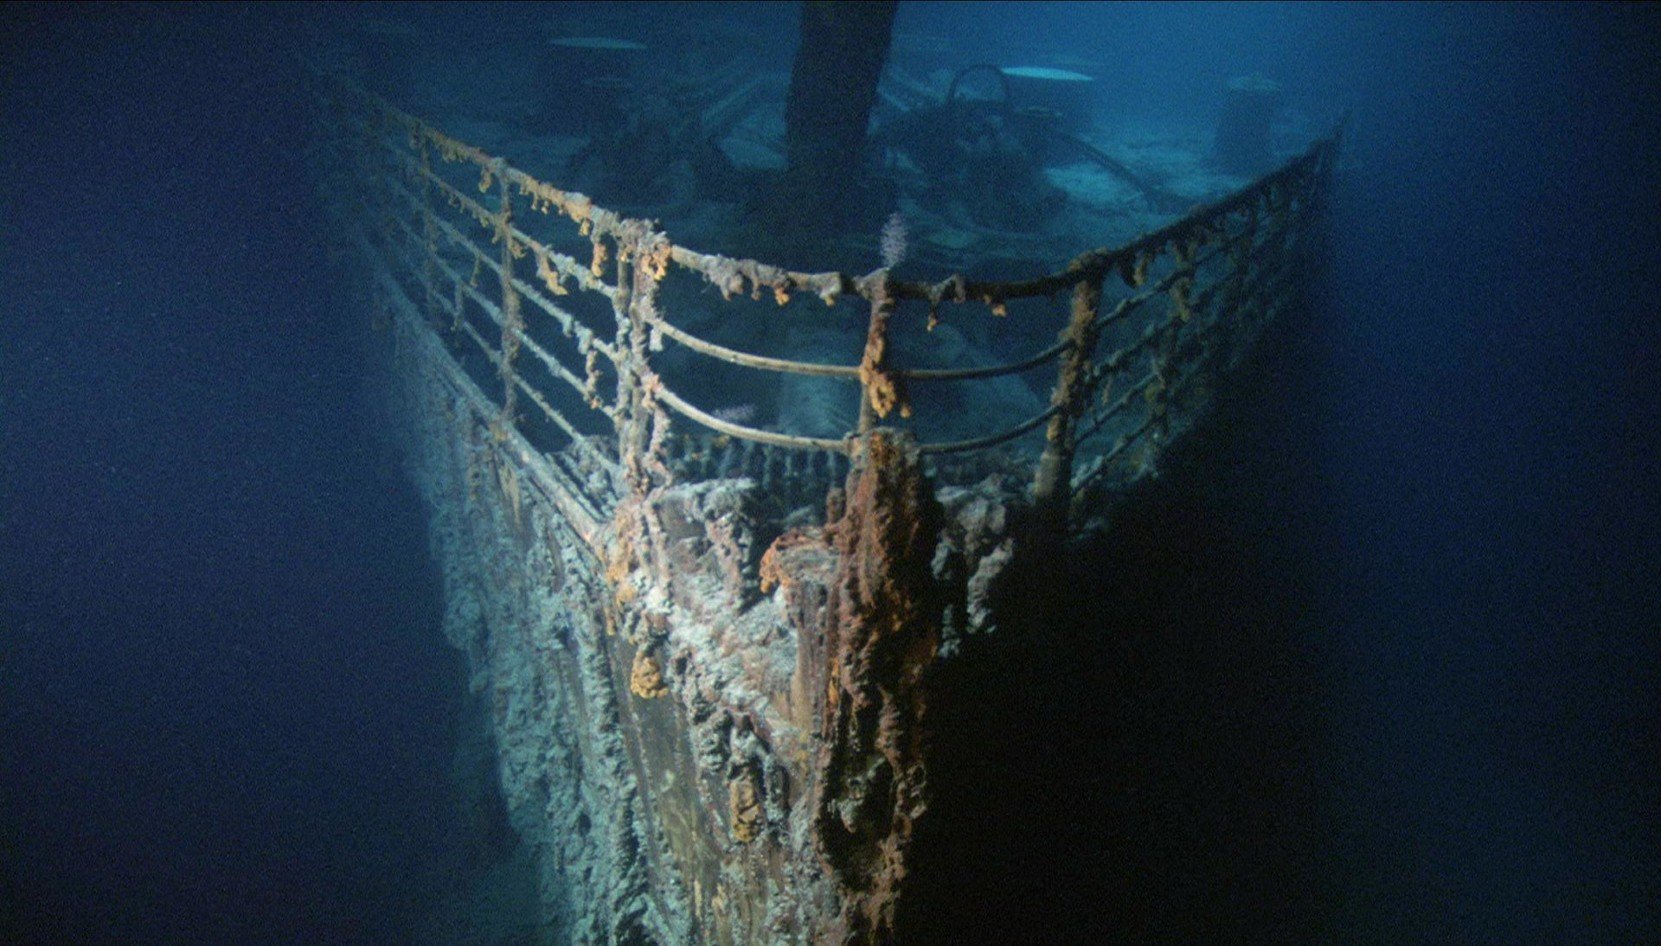 Призраки бездны: Титаник фильм 2003